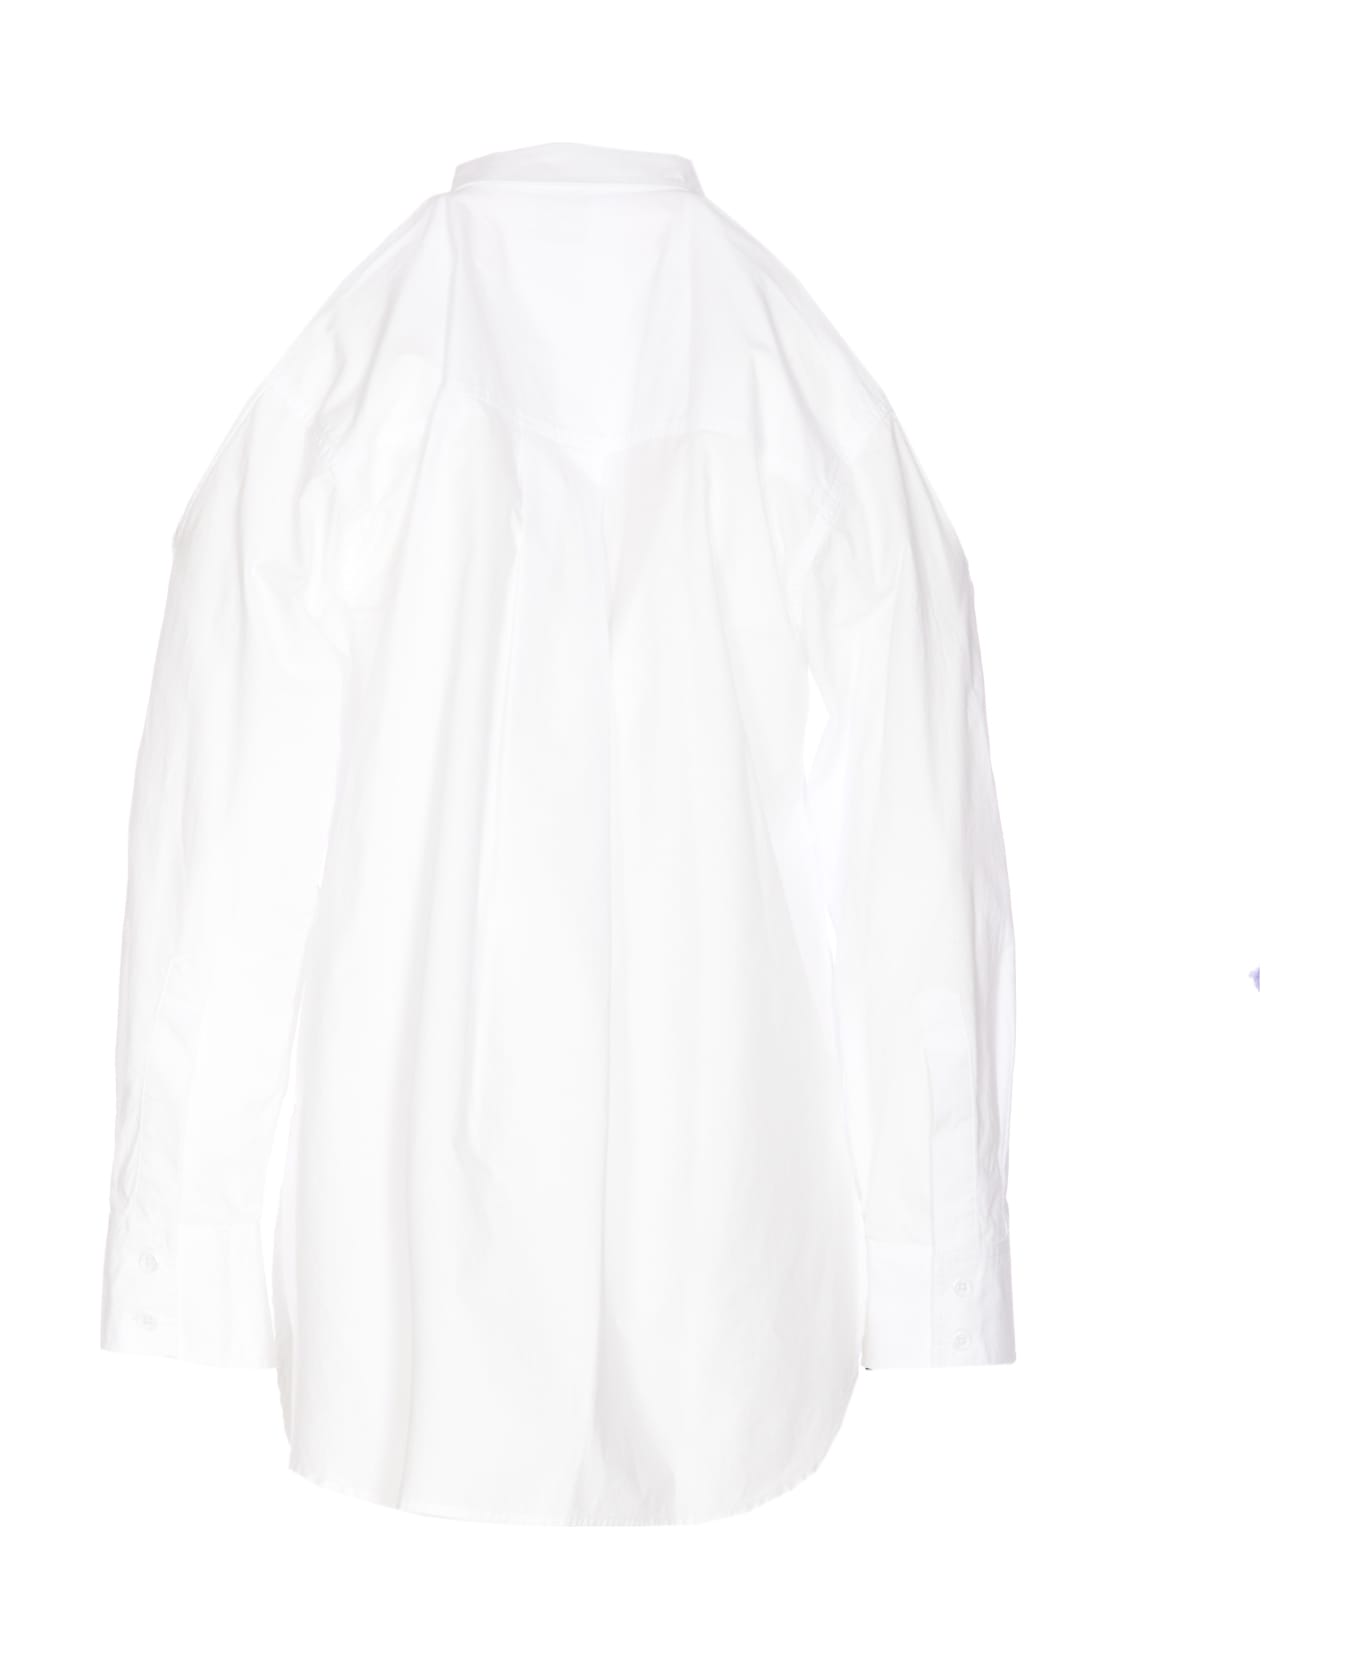 Pinko Canterno Shirt - White